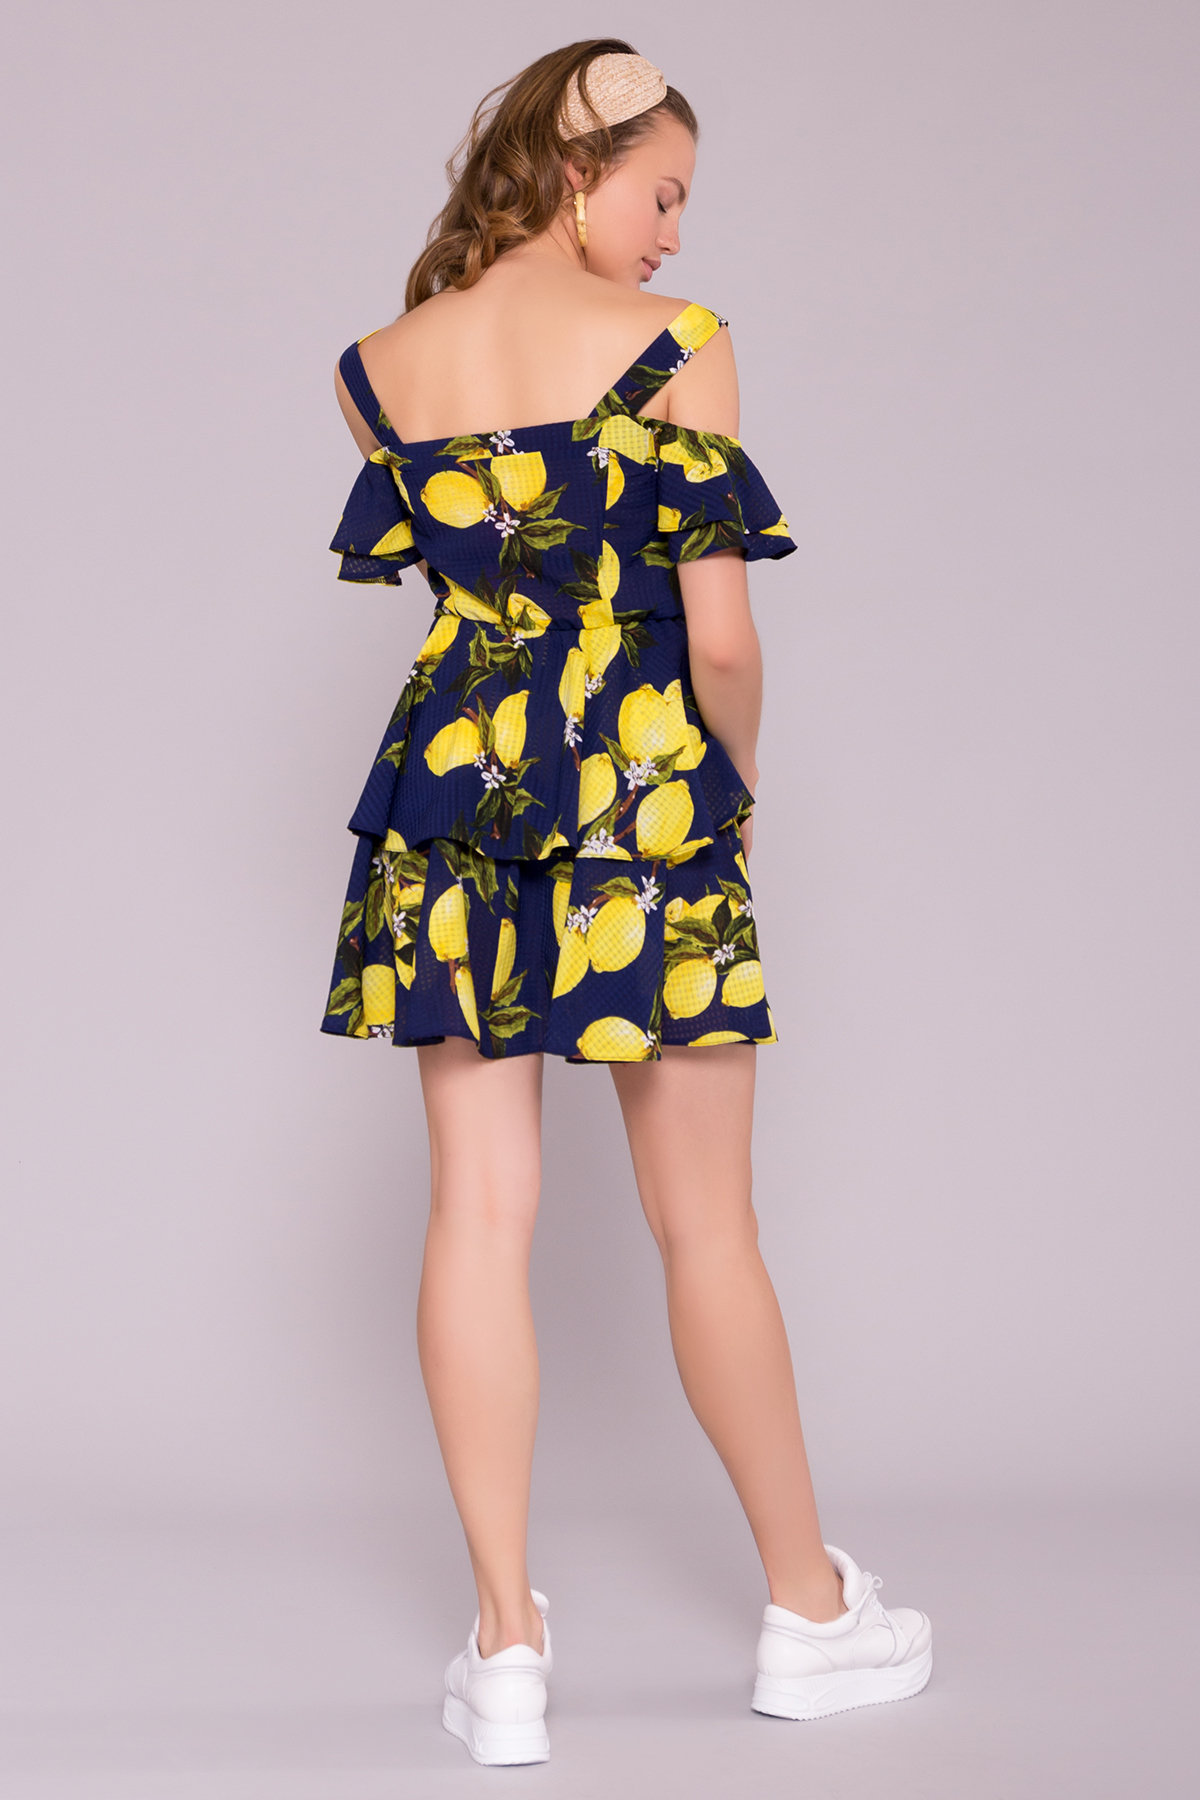 Платье Маори 7150 АРТ. 42561 Цвет: Лимоны т.синий/желтый - фото 2, интернет магазин tm-modus.ru